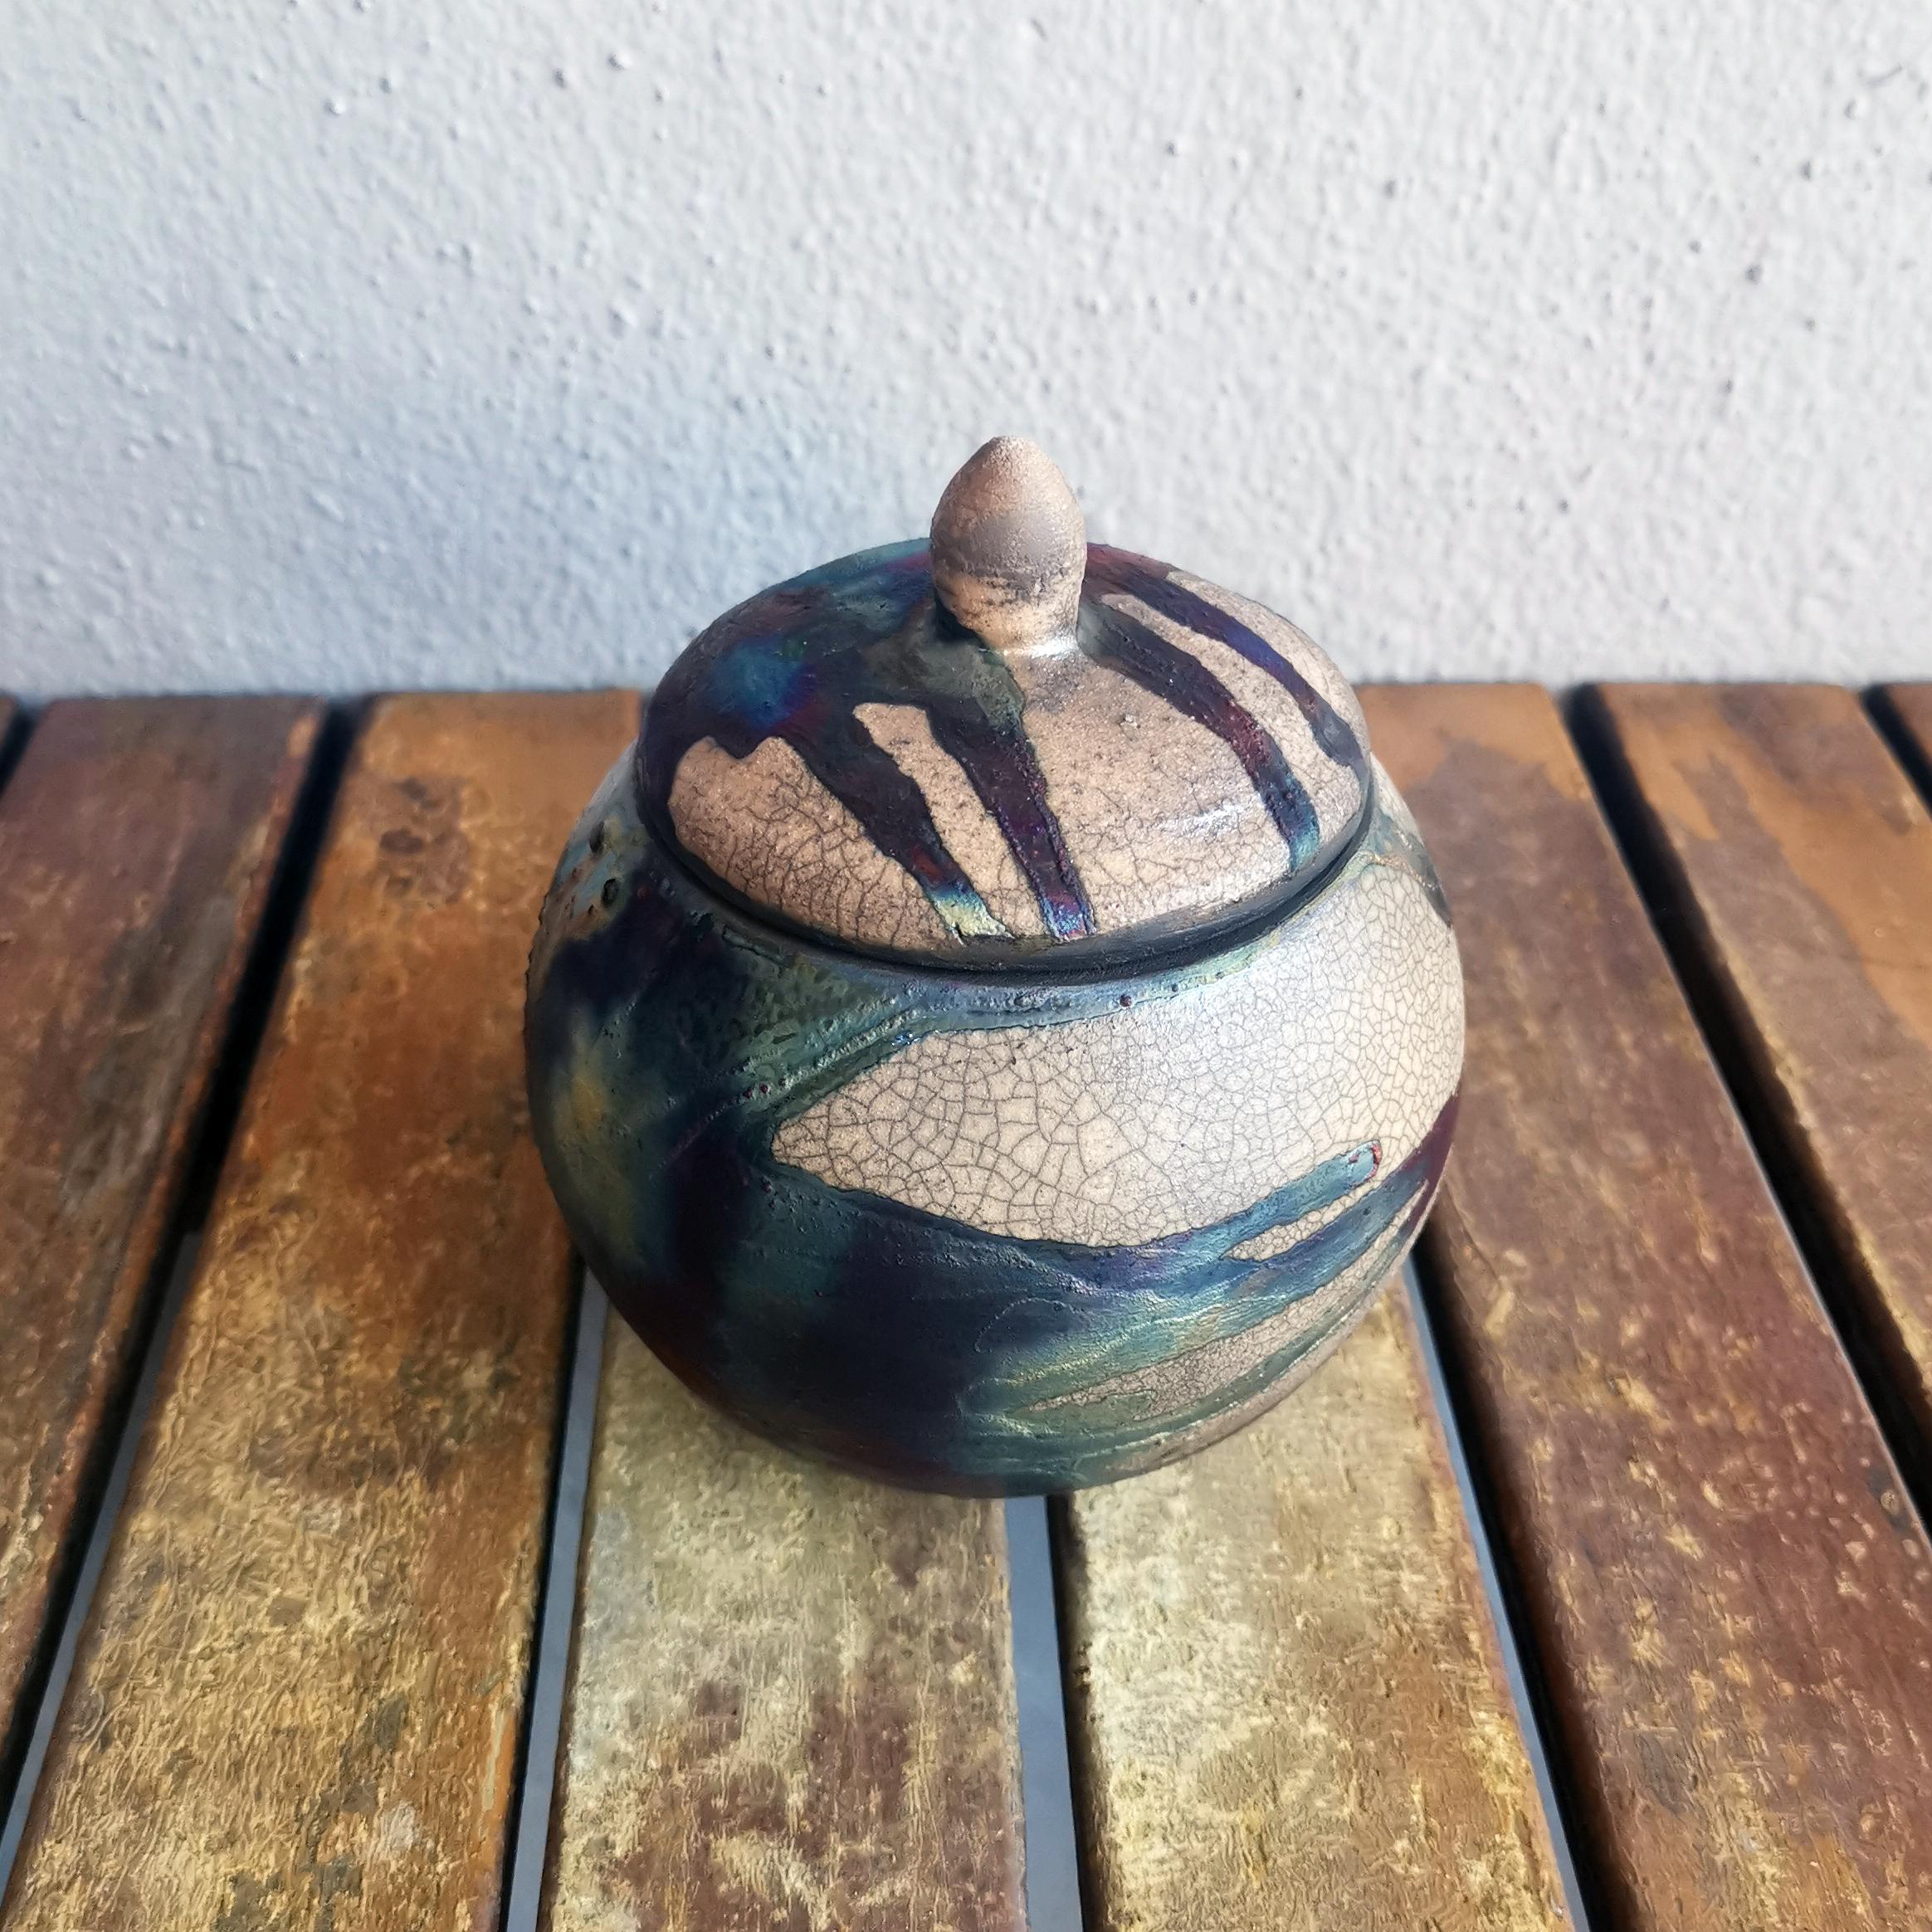 Kioku - Erinnern  

Die Kioku-Urne ist eine kleine handtellergroße Urne, die eine organische Kugelform aufweist. Diese Urne eignet sich sehr gut für die sterblichen Überreste von Haustieren oder für das gemeinsame Gedenken von